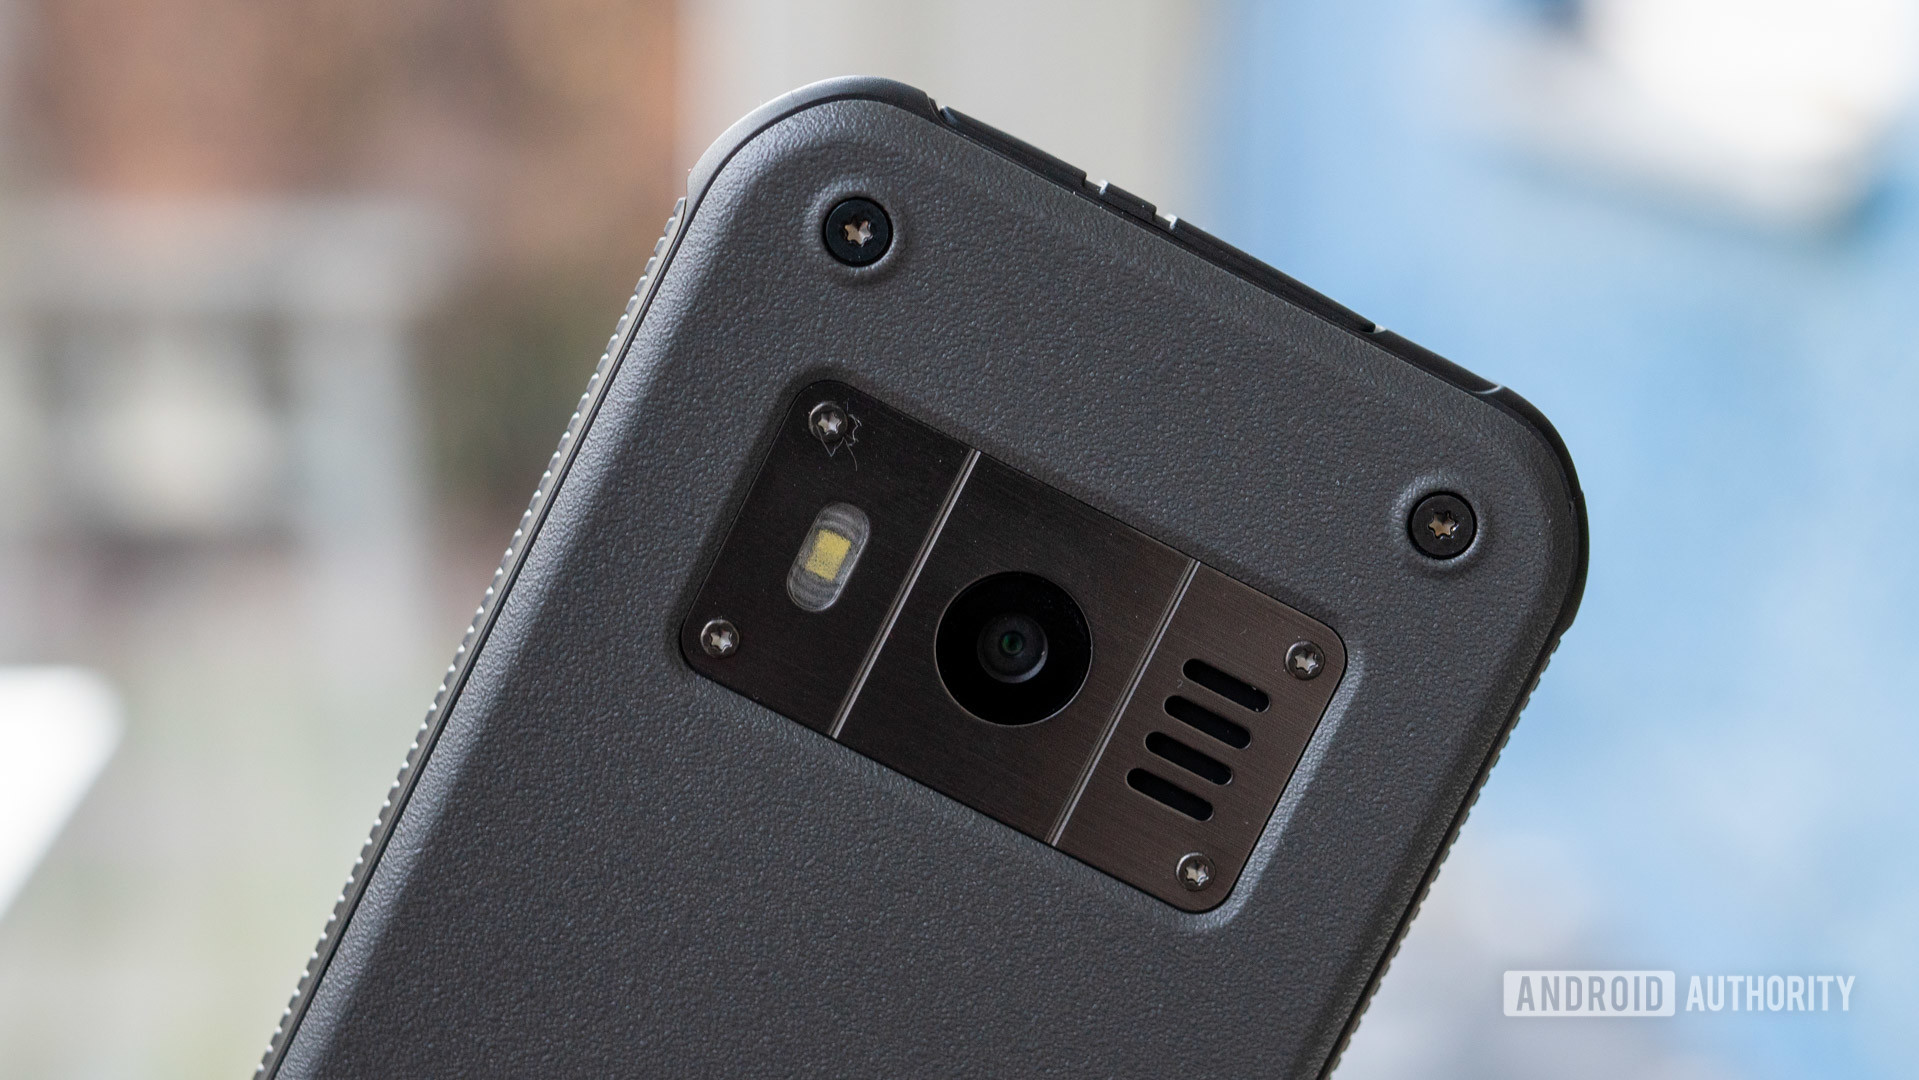 Nokia 800 Tough review camera detail